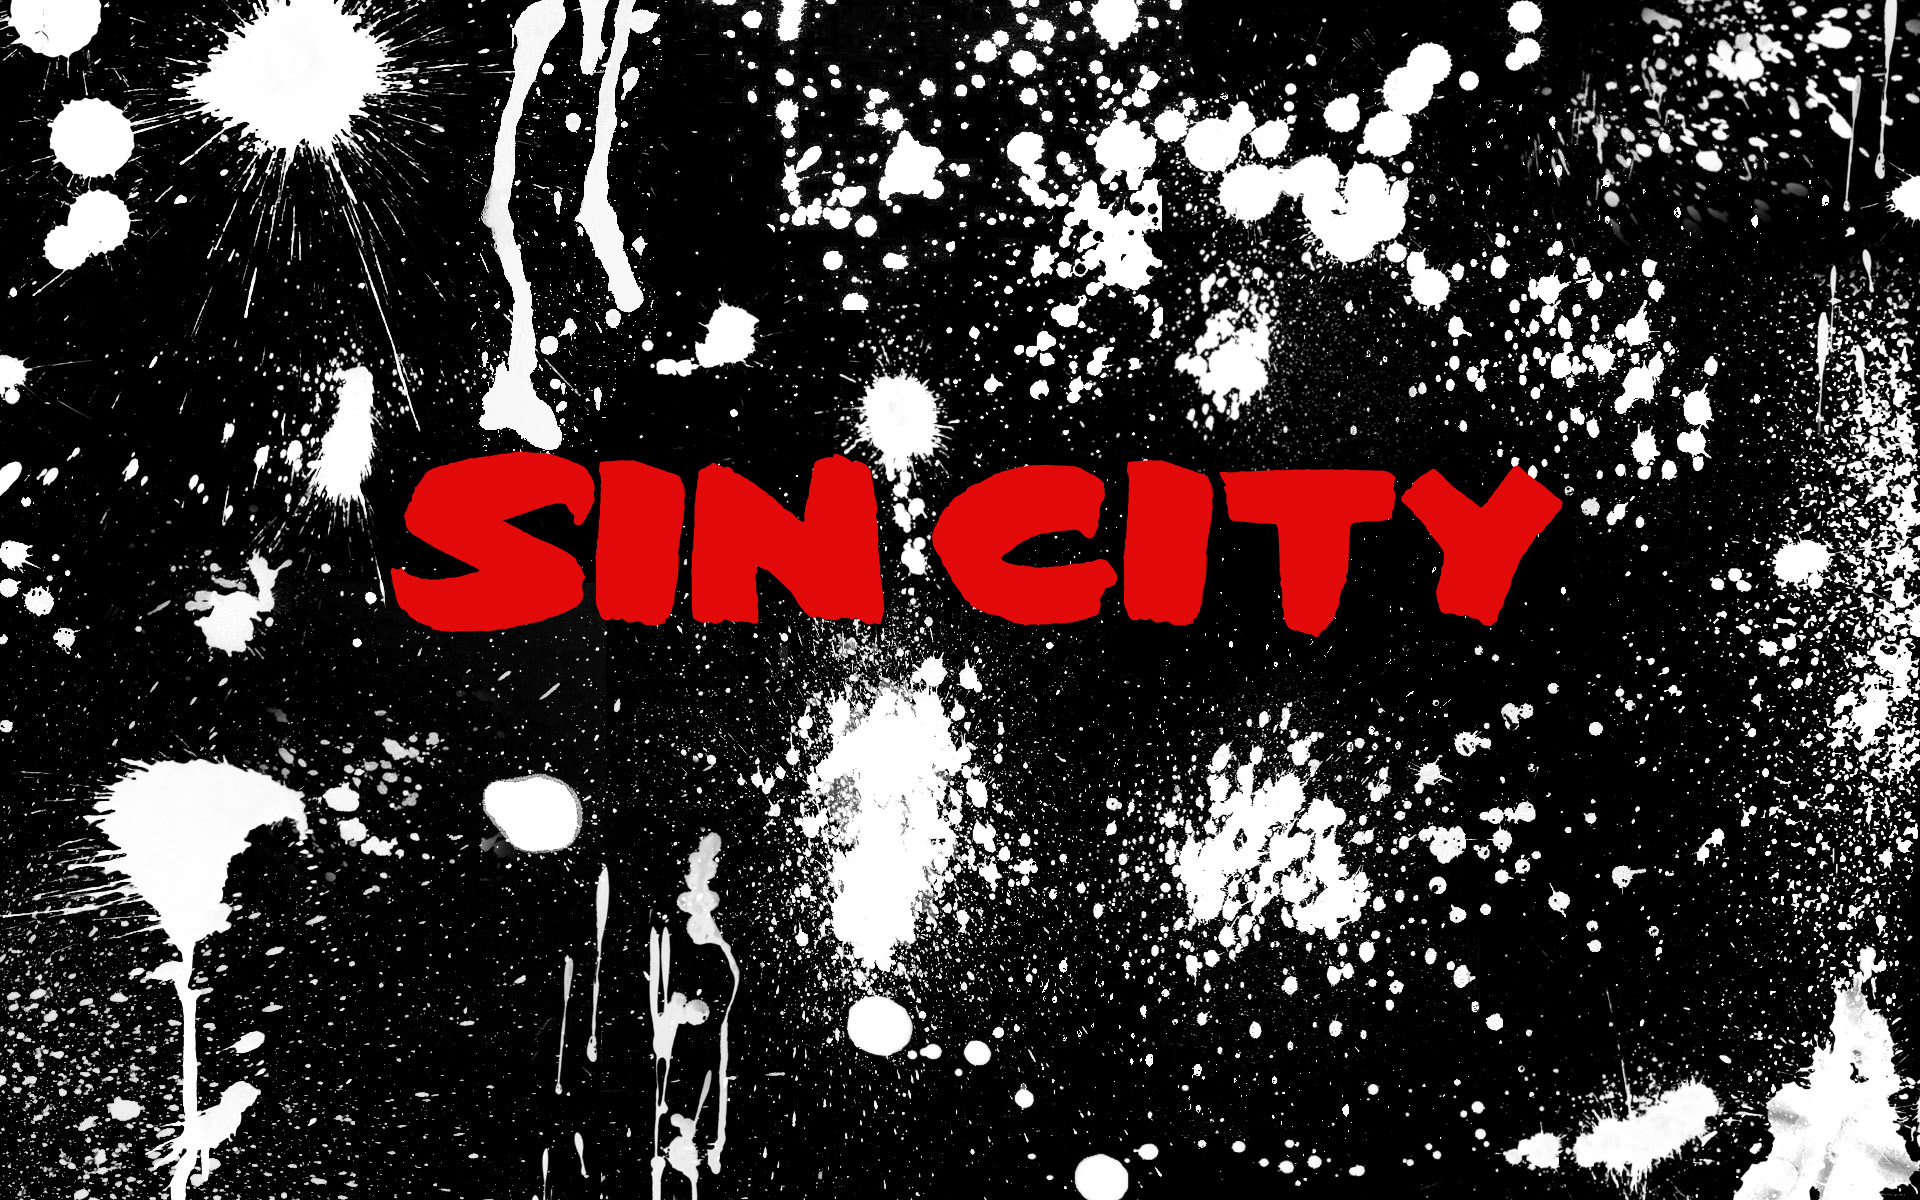 Sin City: The film stars an ensemble cast led by Jessica Alba, Benicio del Toro, Brittany Murphy. 1920x1200 HD Wallpaper.